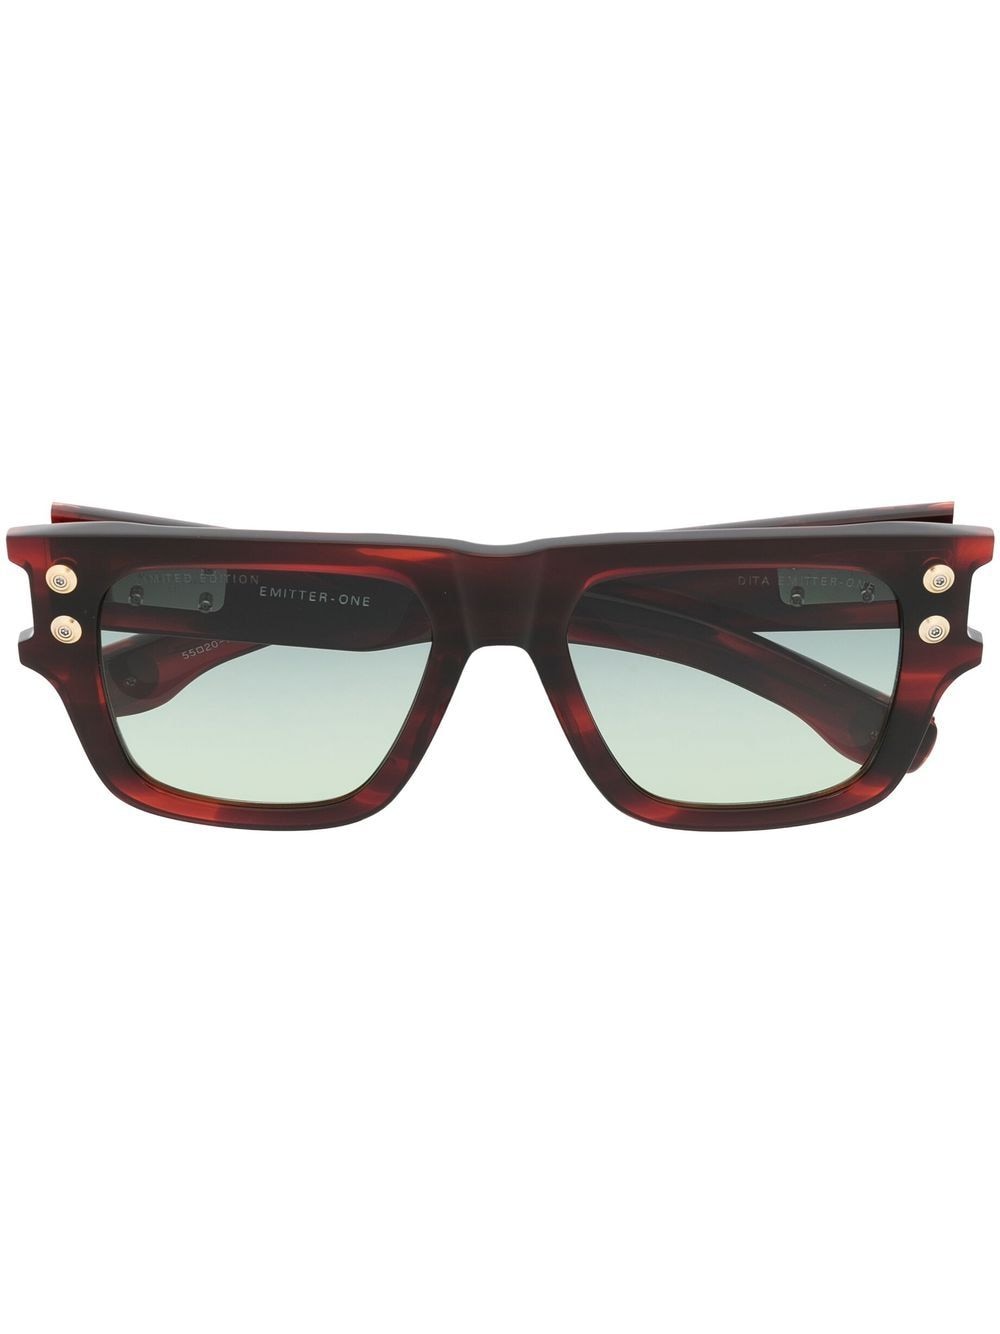 Dita Eyewear Emitter-One square-frame sunglasses - Red von Dita Eyewear